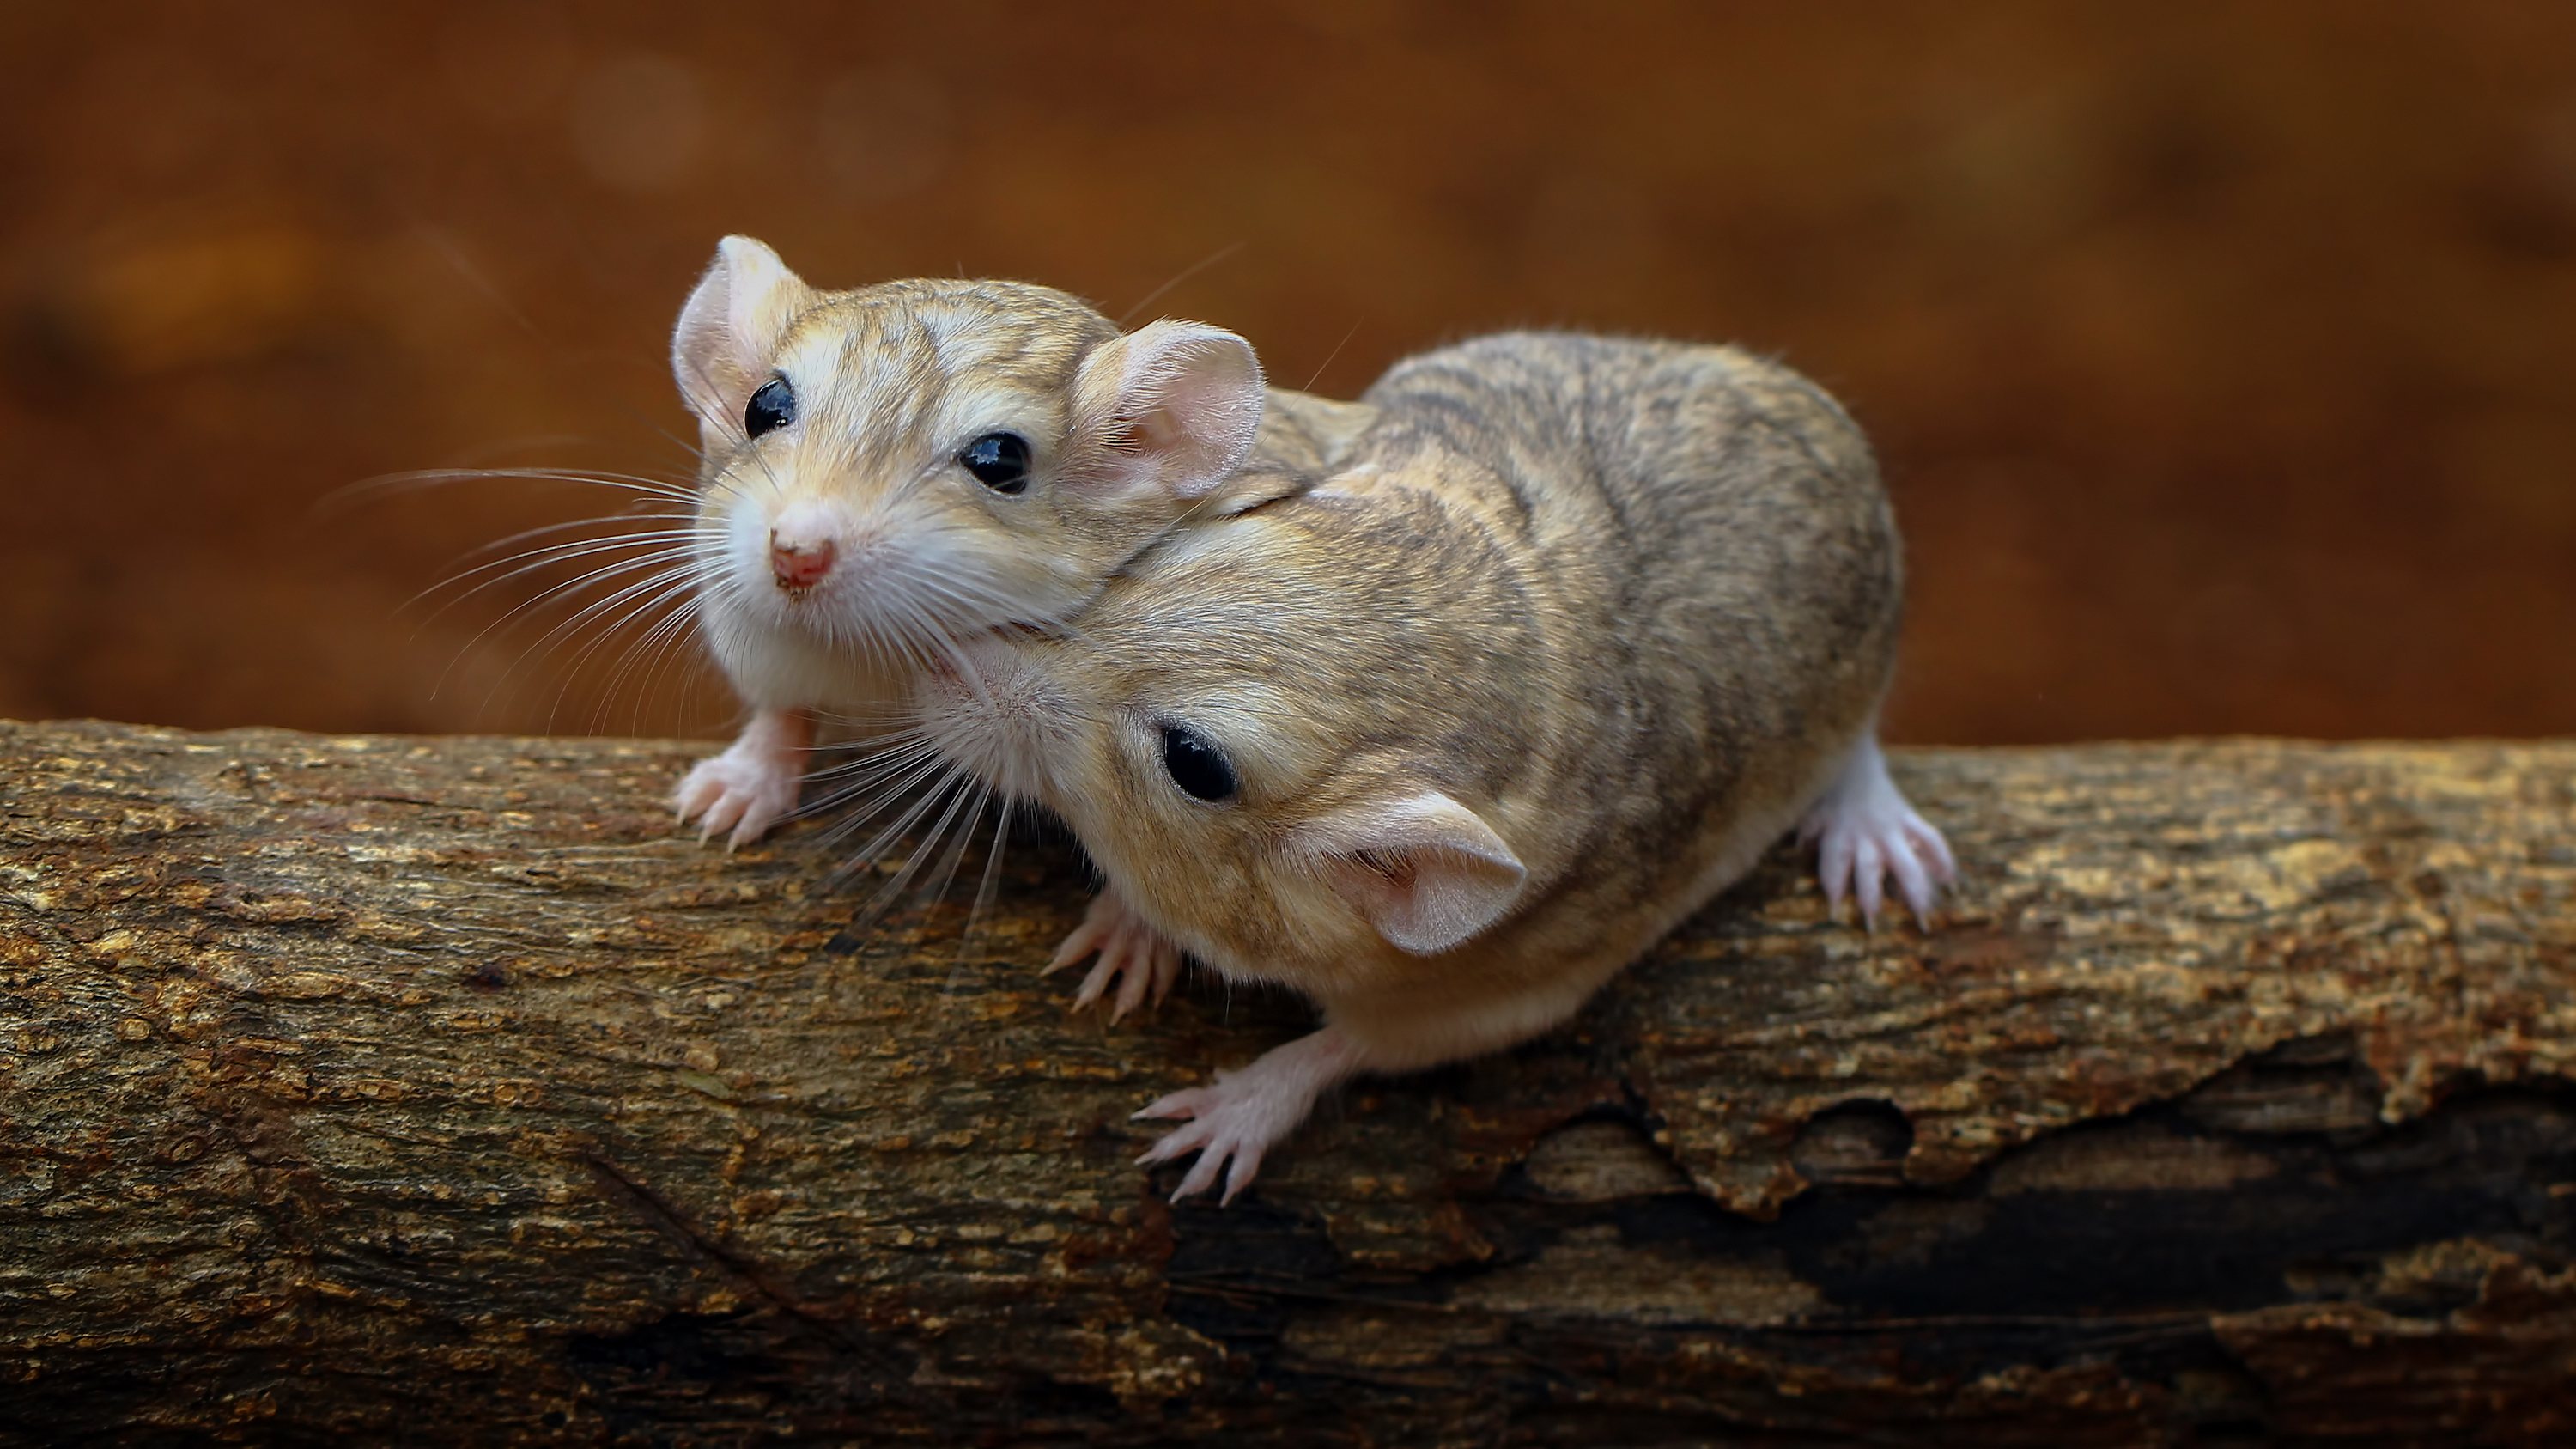 Os cientistas injetaram o roedor macho com uma dose extra de testosterona depois de acasalar com uma fêmea